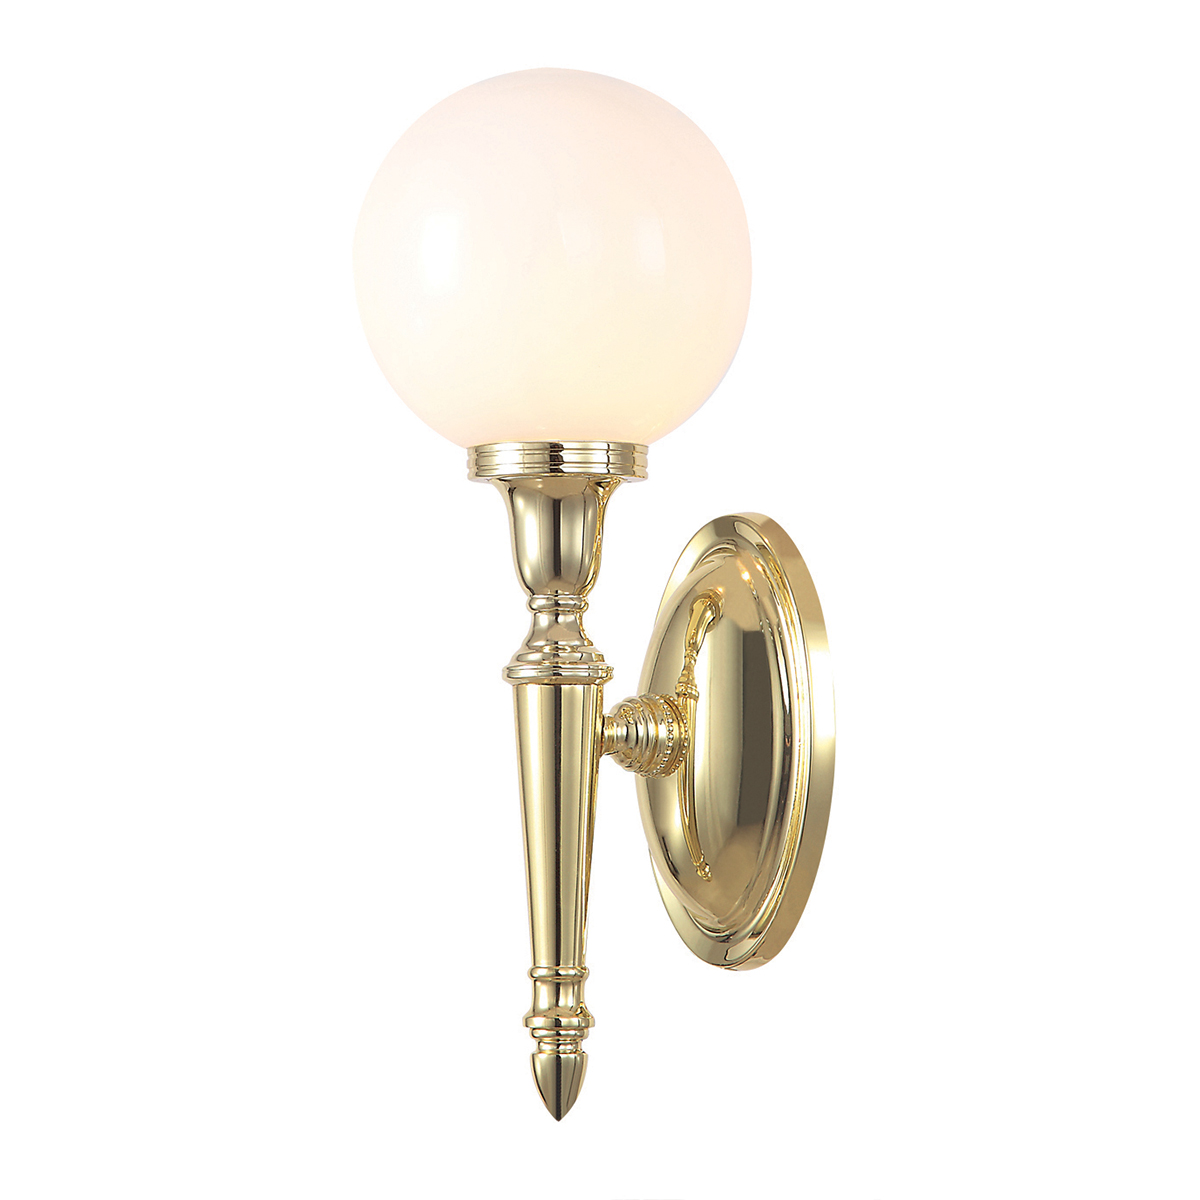 DRYDEN LED polished brass BATH-DRYDEN4-PB Elstead Lighting